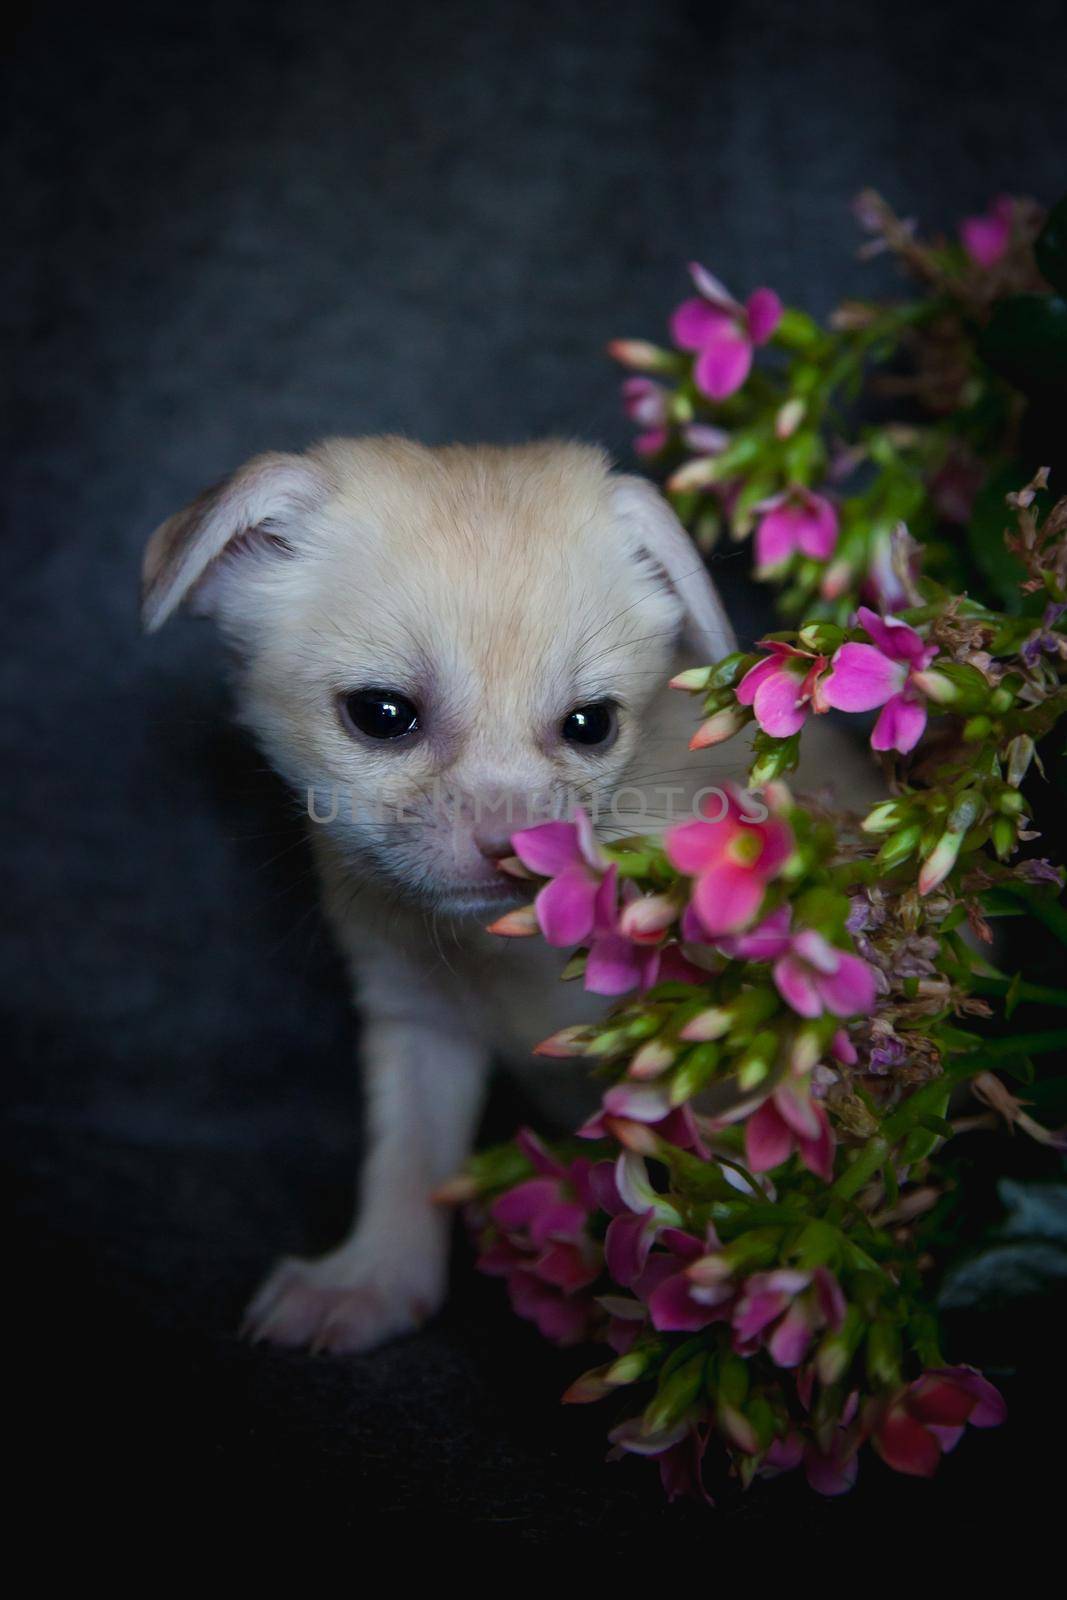 Cute Newborn fennec fox cub on black with pink flowers